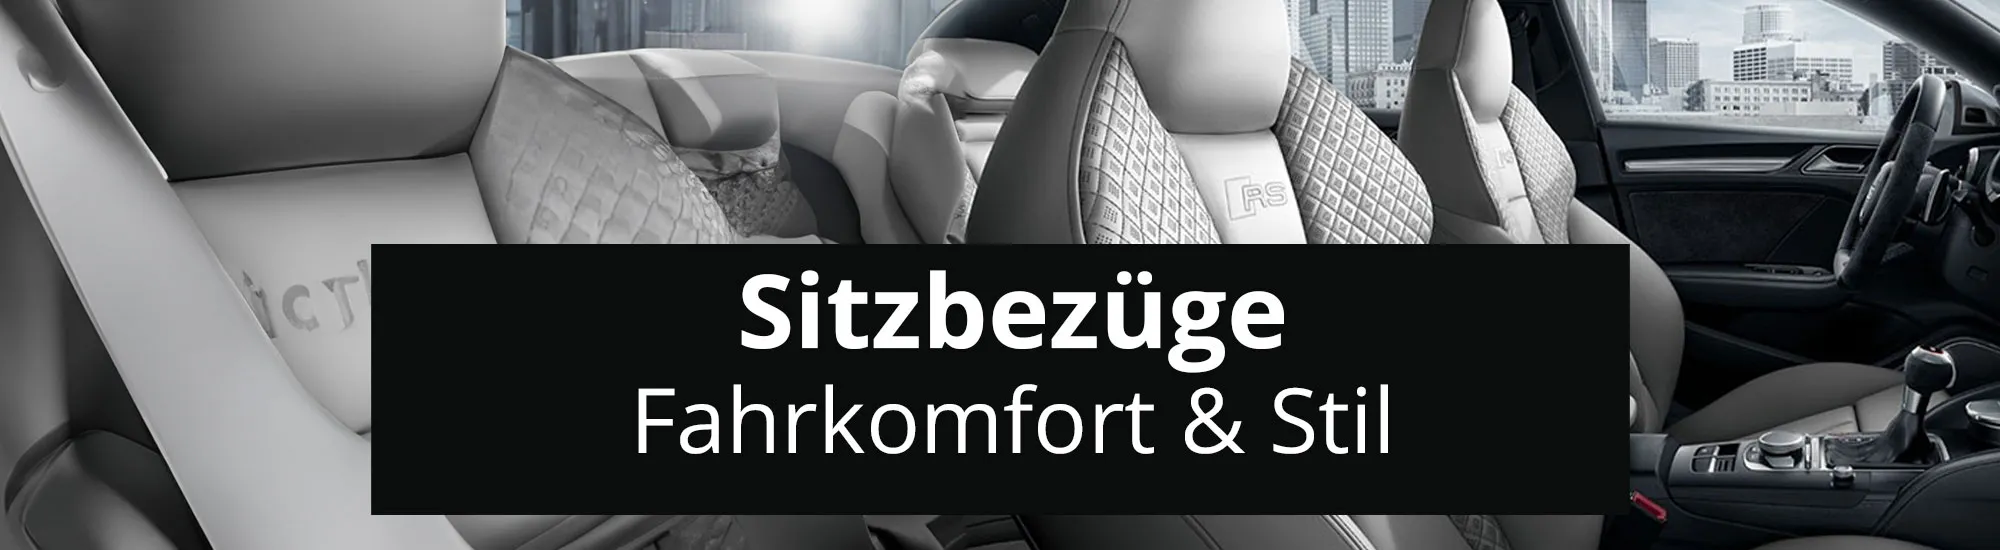 Sitzbezüge für Mercedes Benz Vito in Schwarz online kaufen